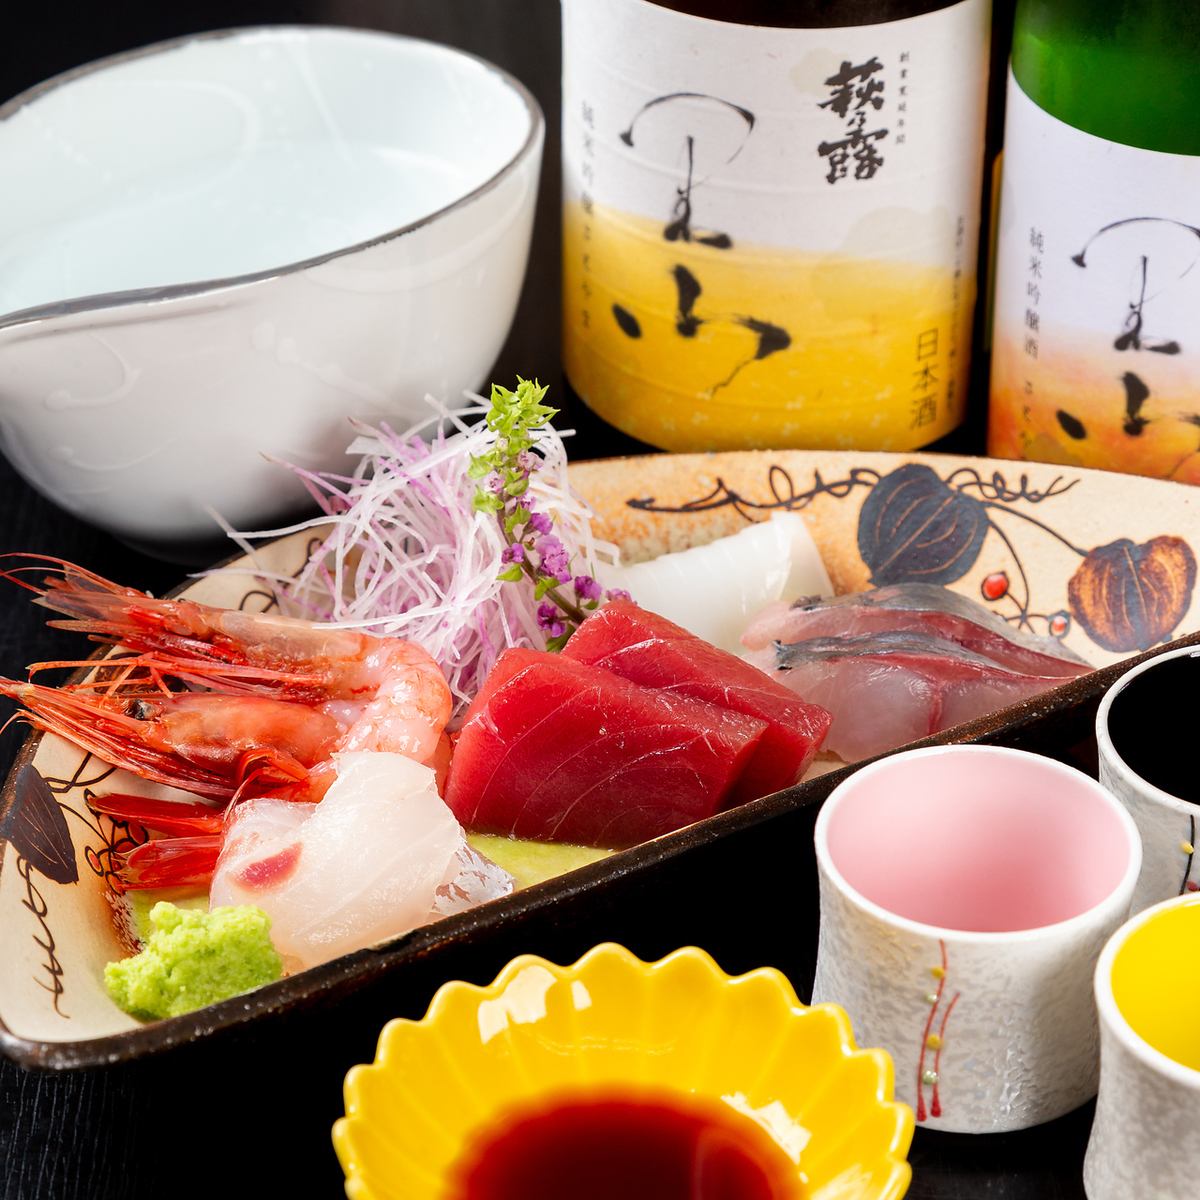 主に日本海でとれた鮮魚で、全て天然魚を使用しております！